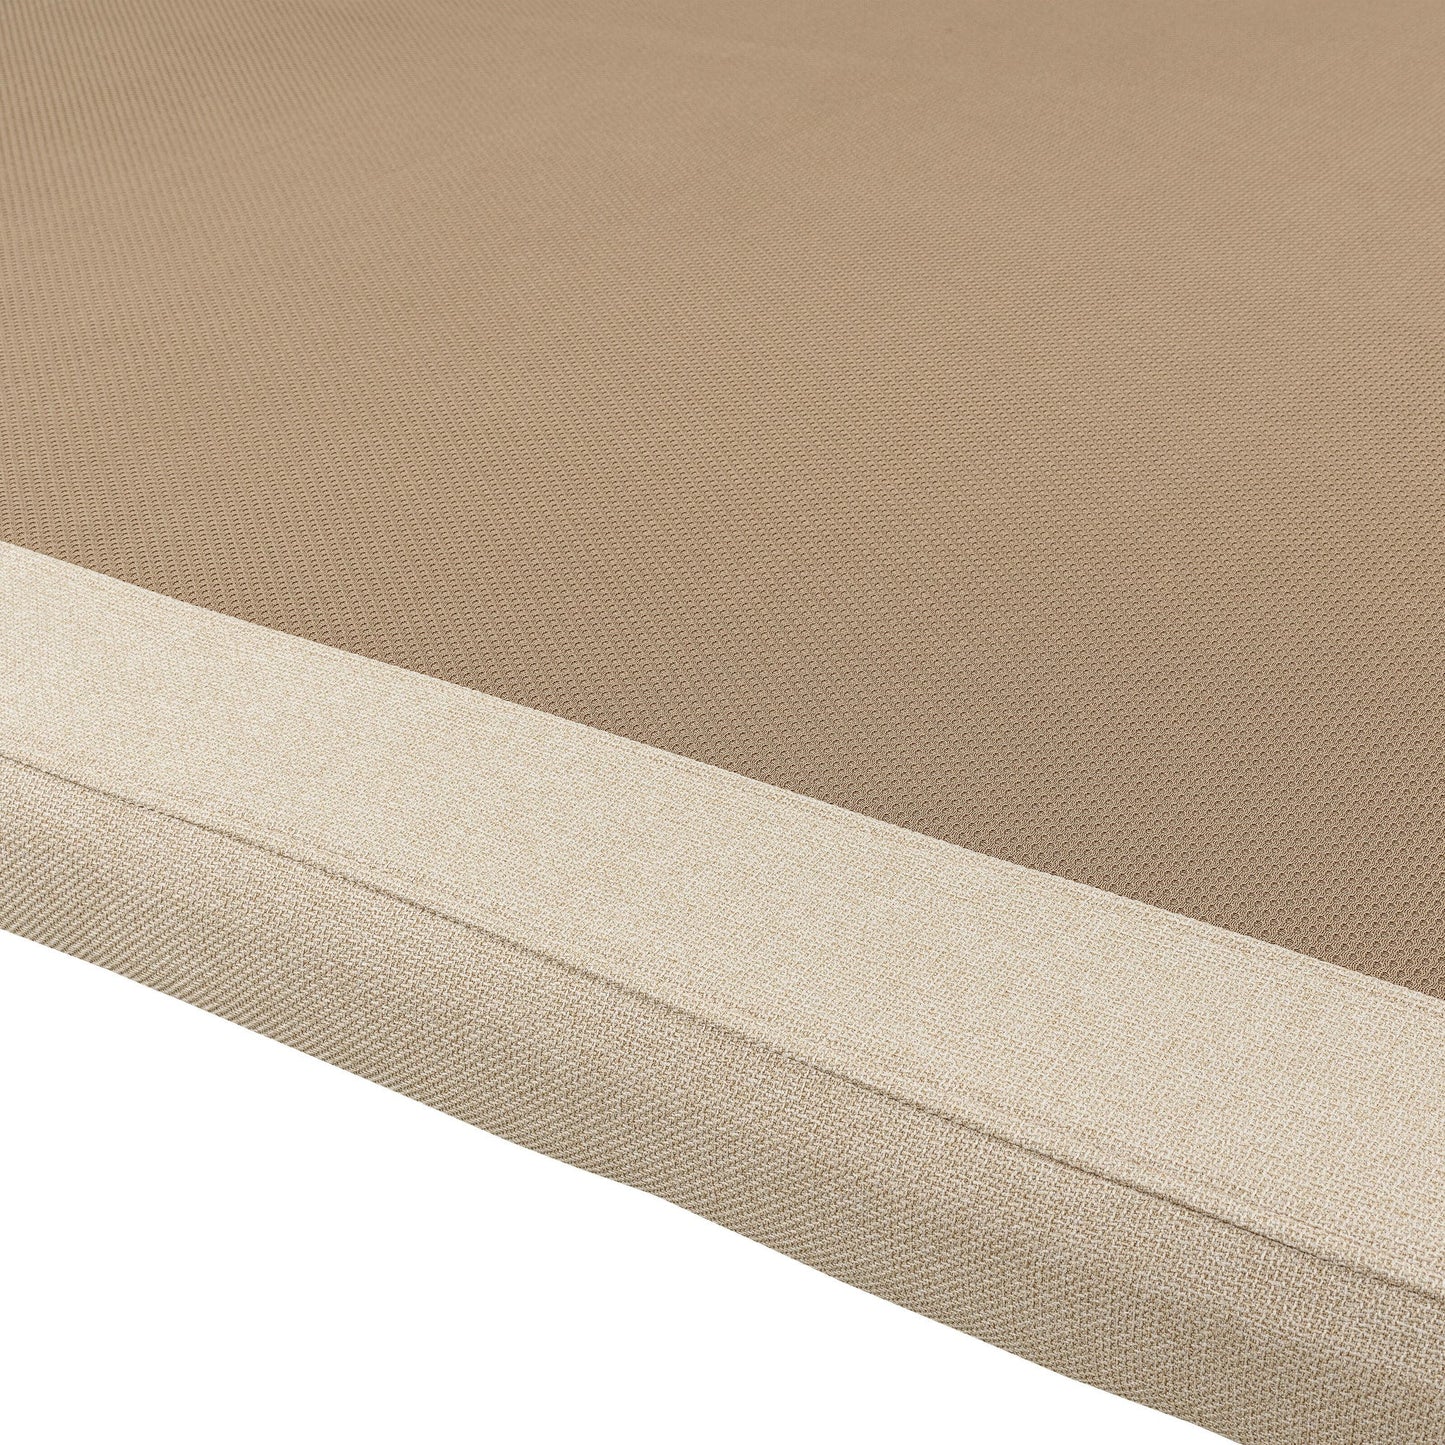 Base tapizada transpirable textil 3D de color aspen - DIVANLIN TEXTIL - 135x220